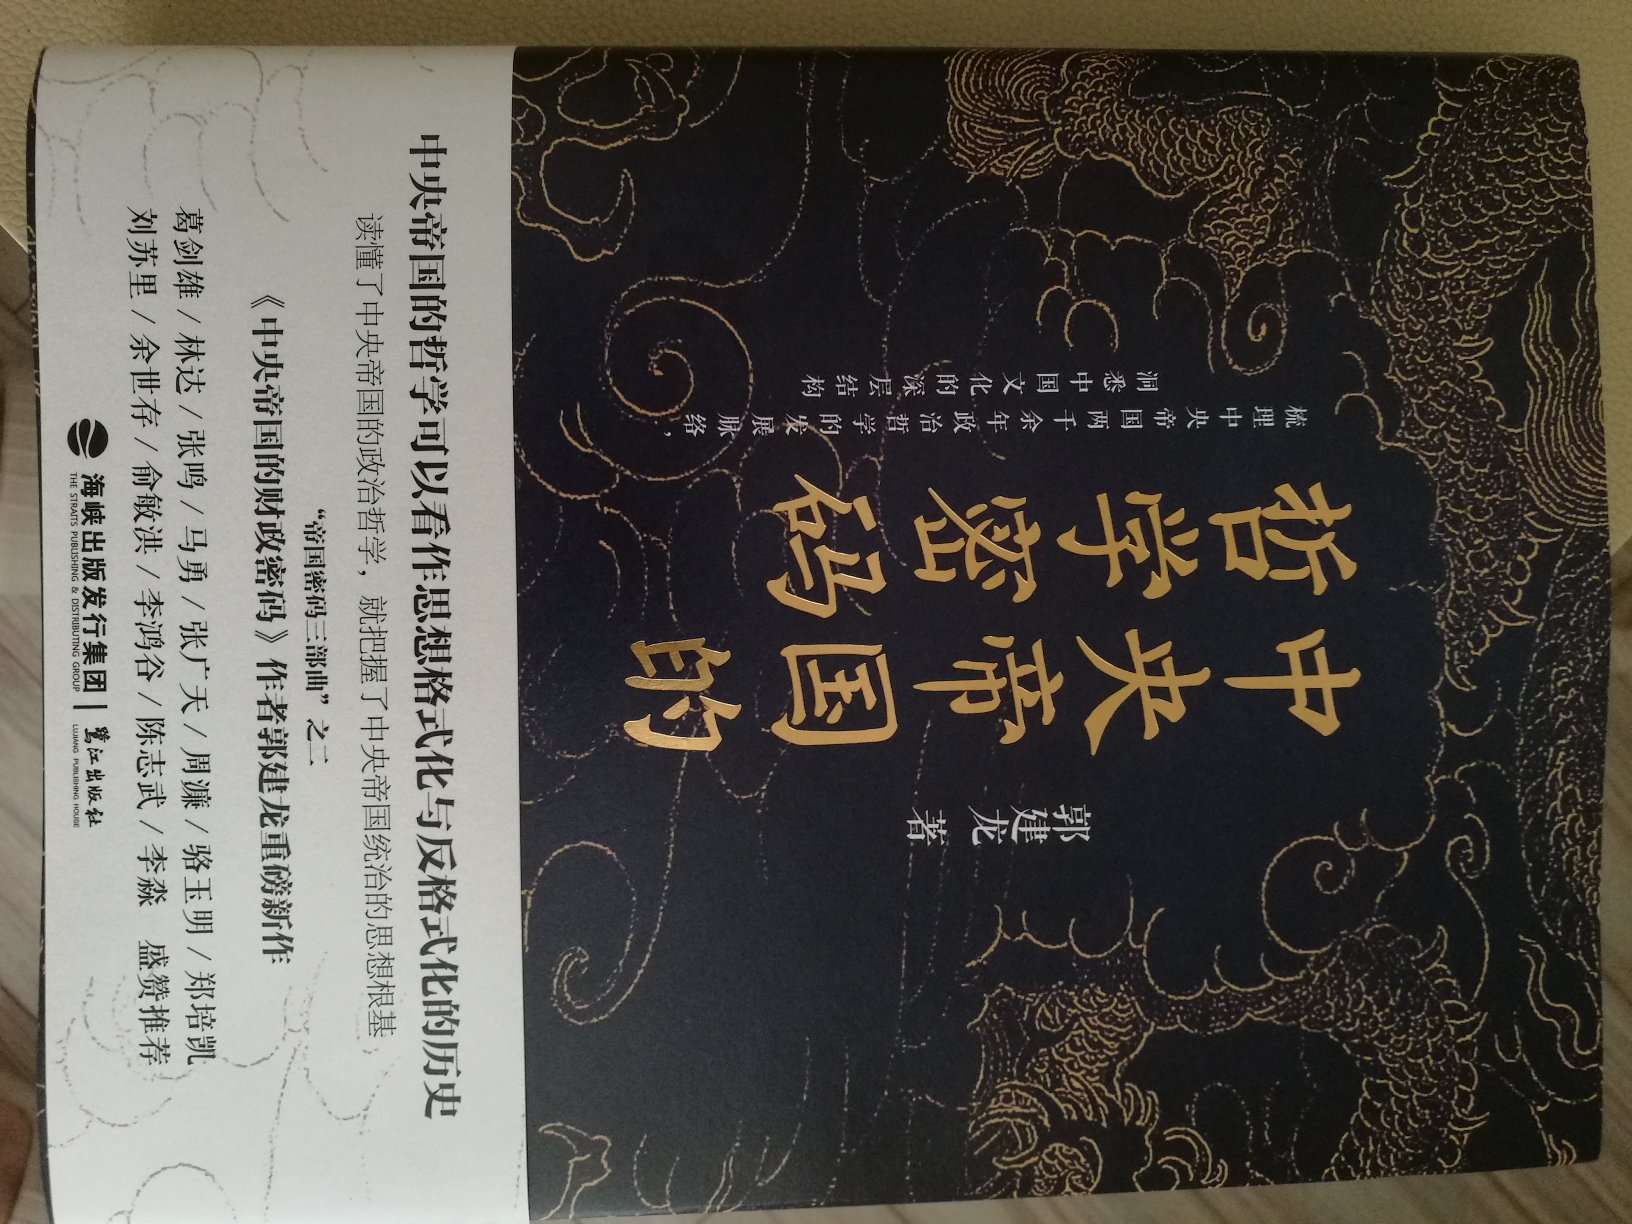 好书，从一个全新角度了解中国历史政治发展脉络，对理解当今社会政治有参考作用